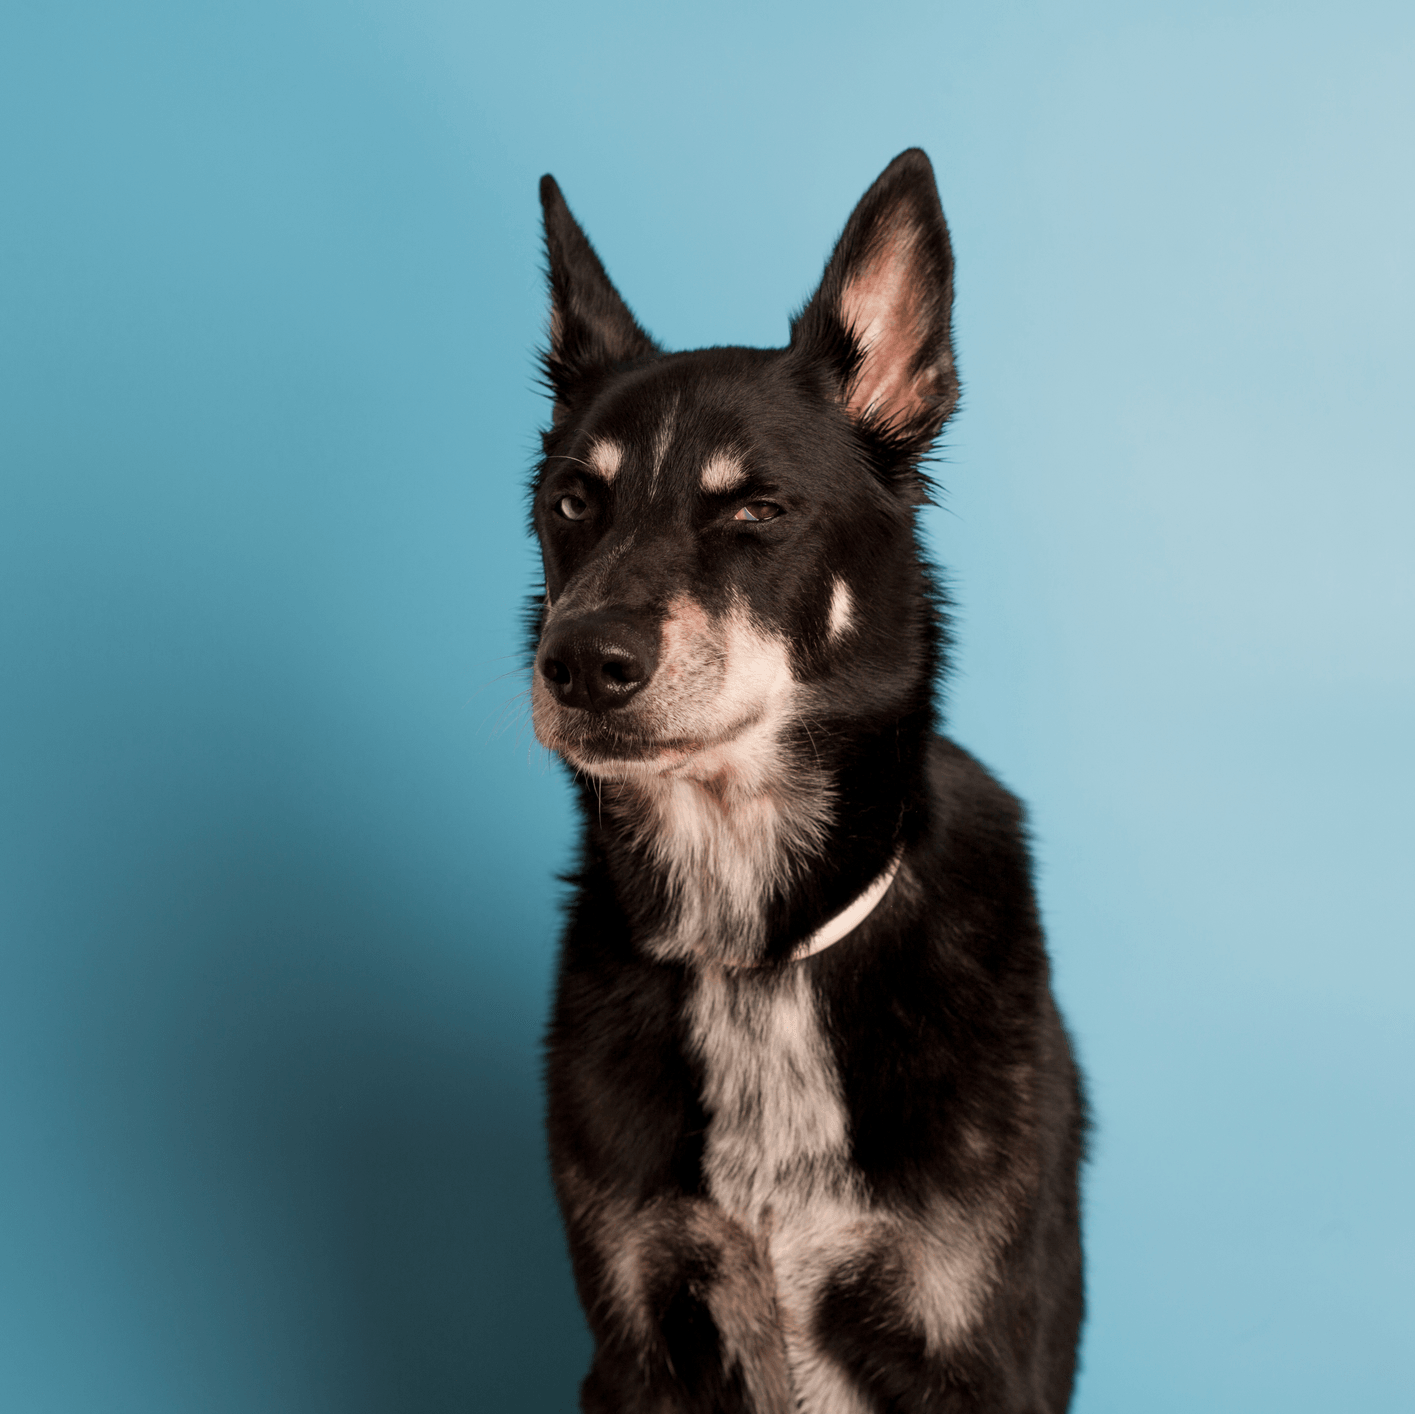 Schwarzer Hund vor graublauem Hintergrund.